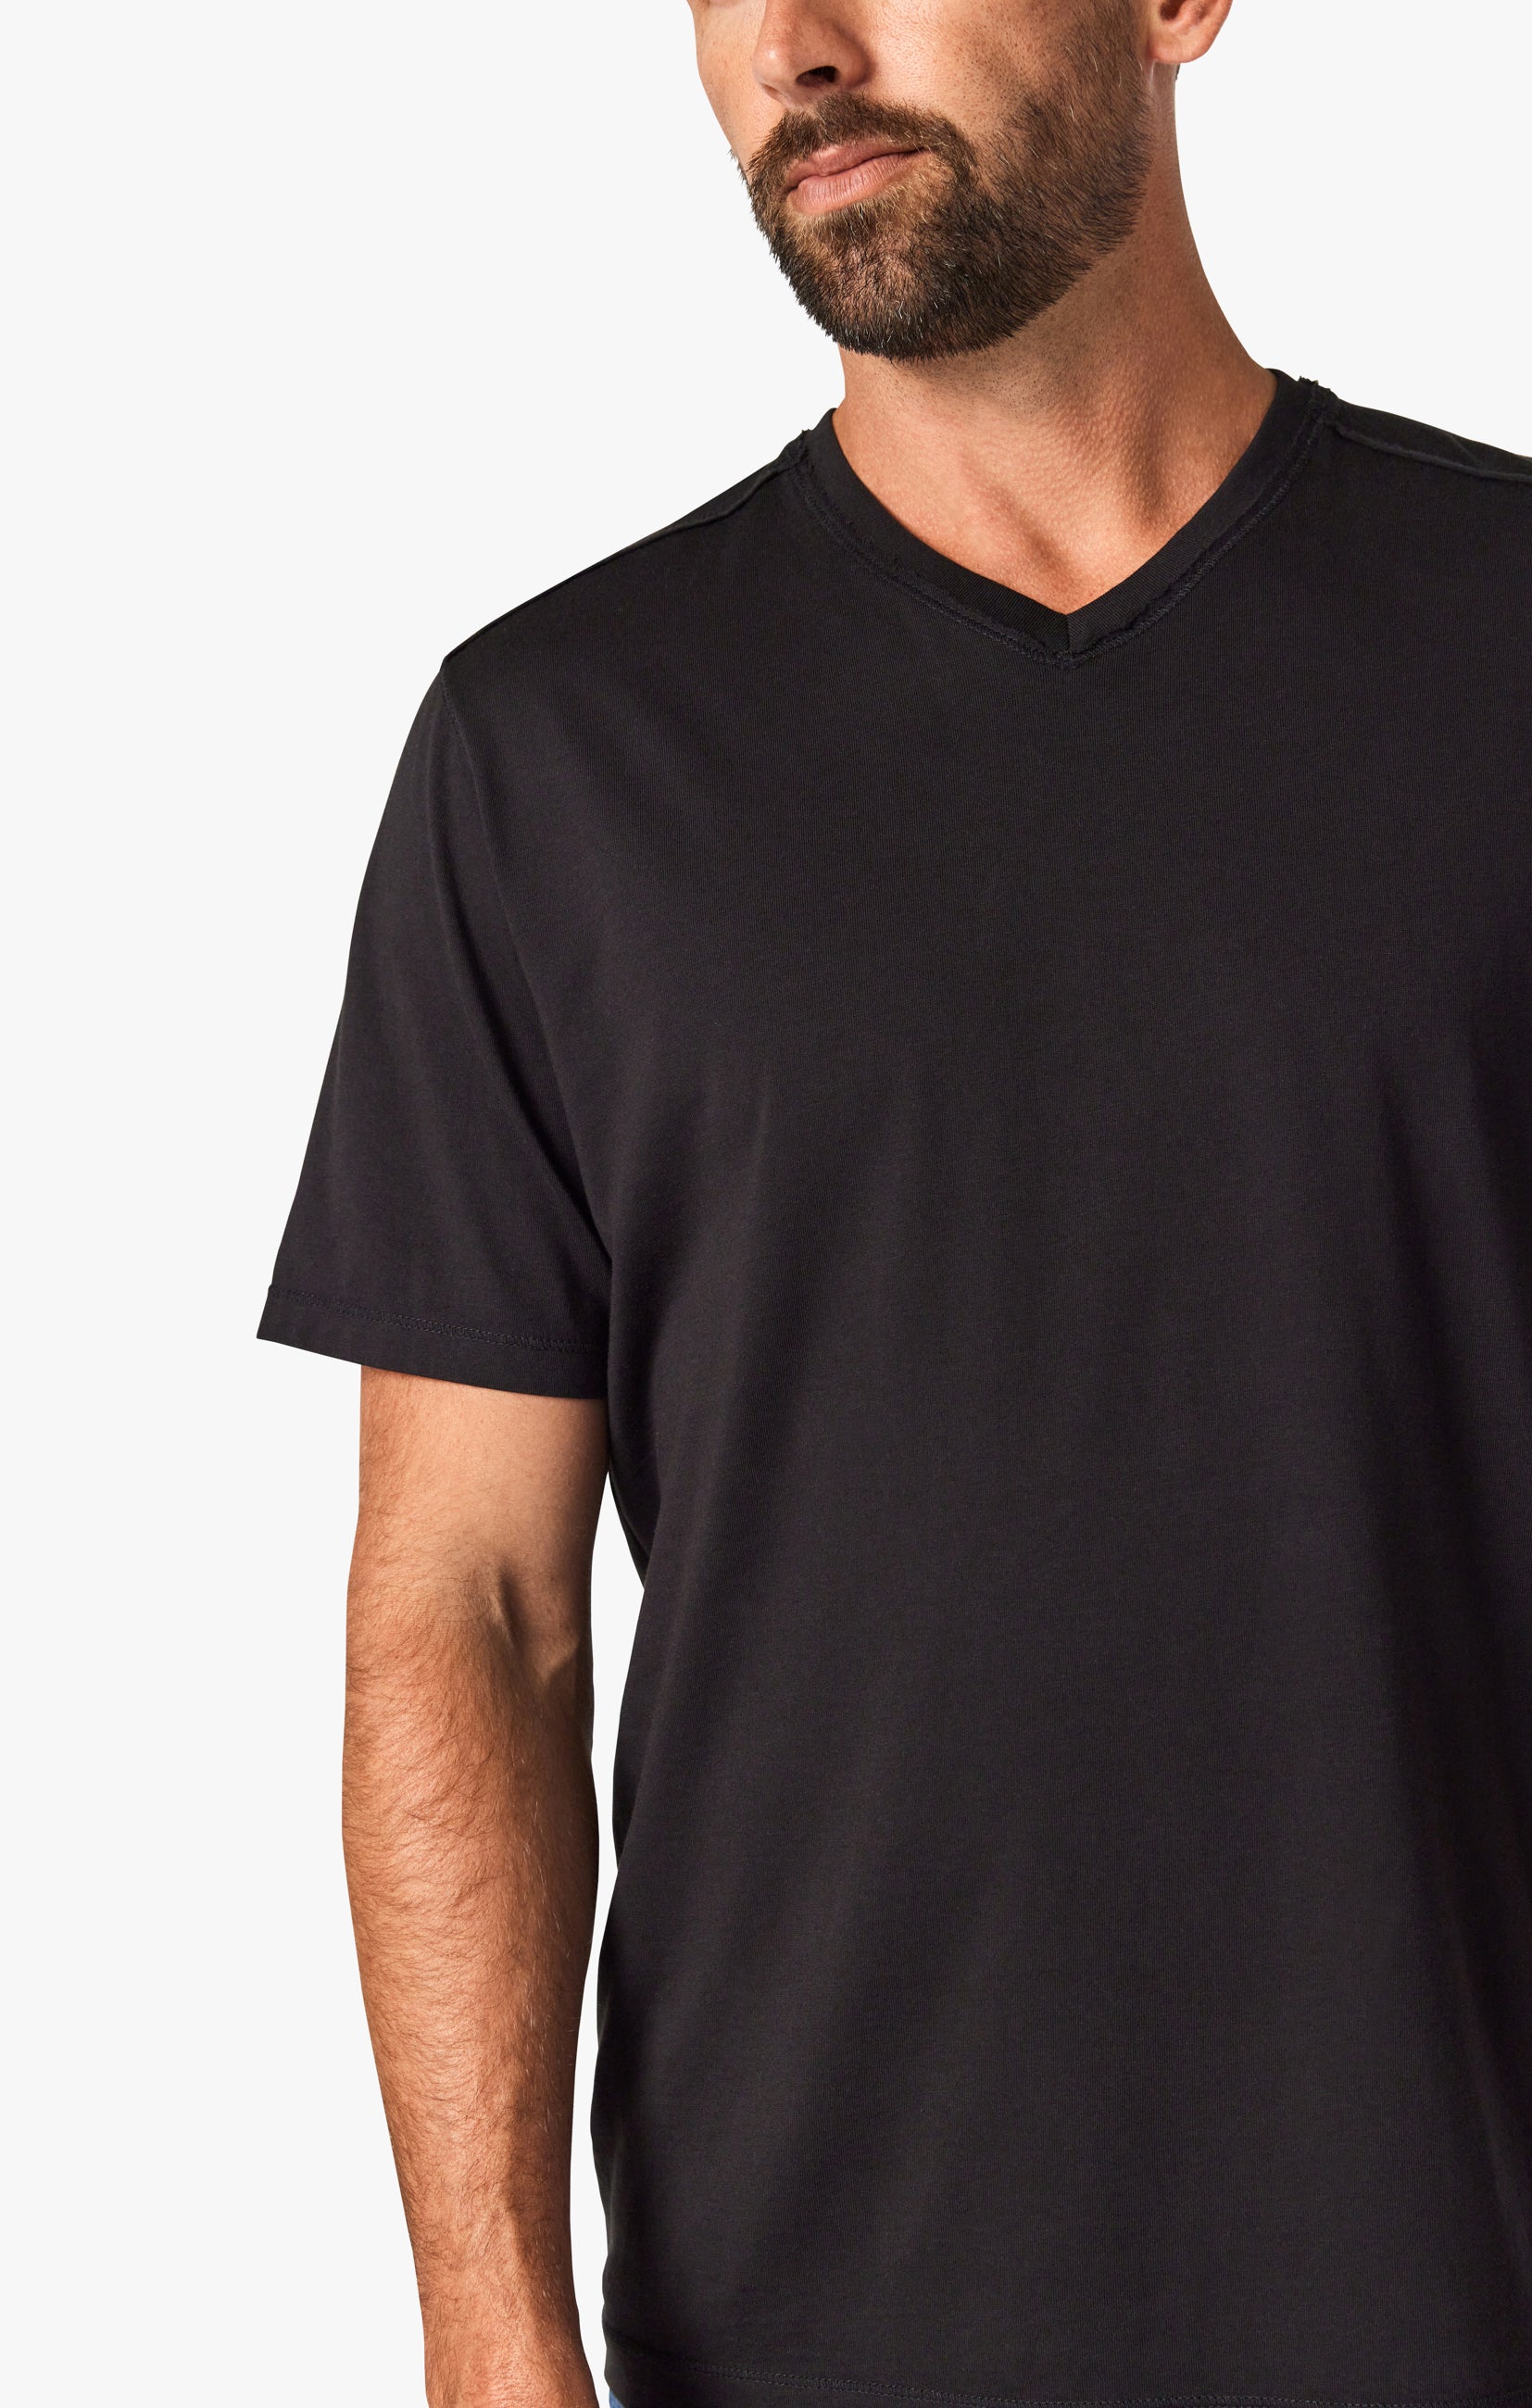 Deconstructed V-Neck T-Shirt in Black Image 5